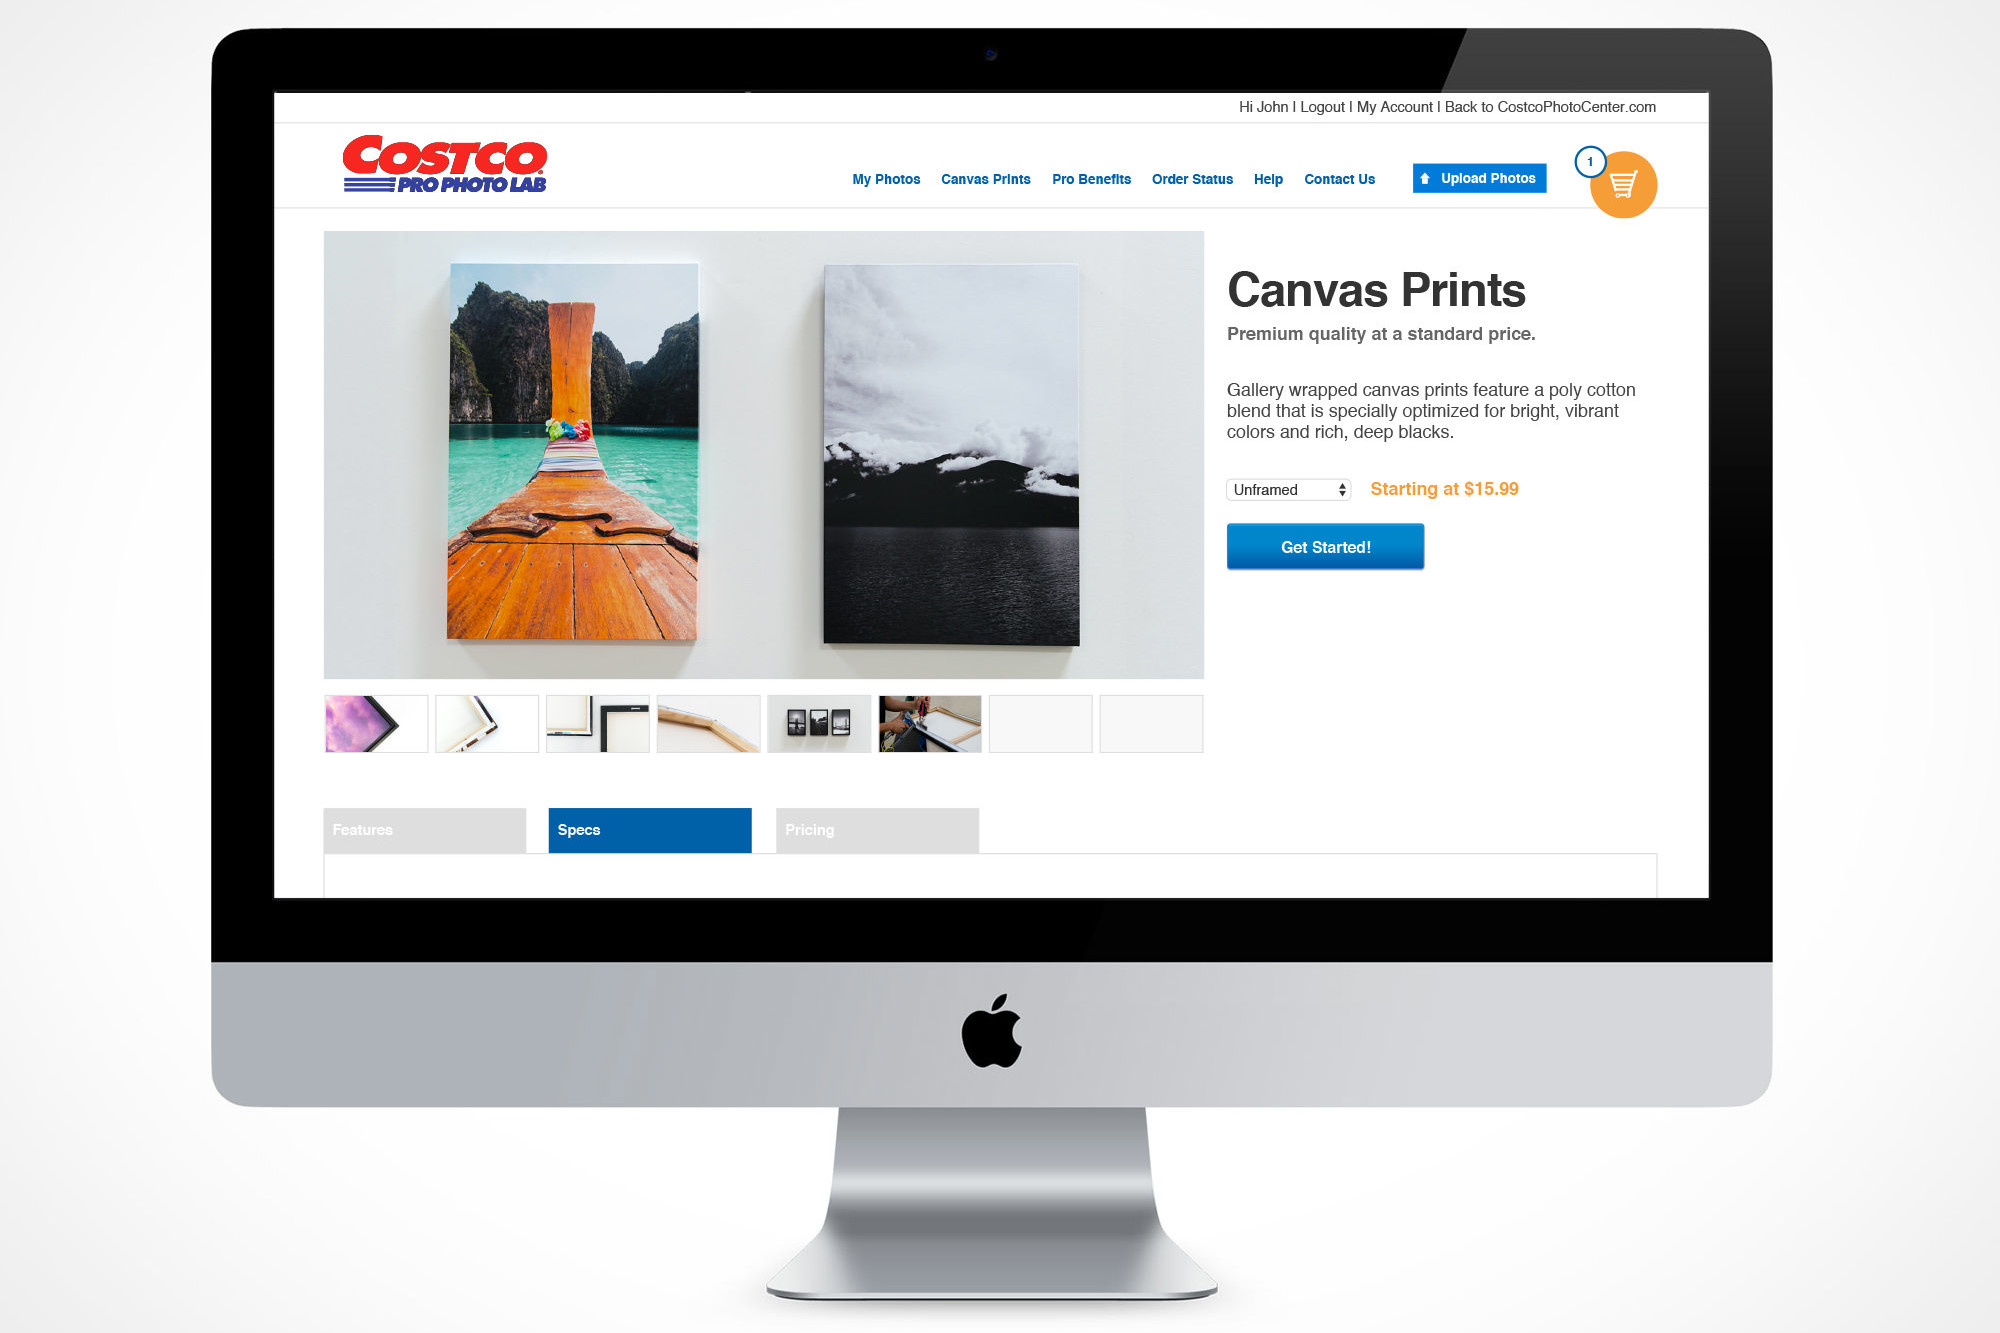 Costco Pro Photo Lab